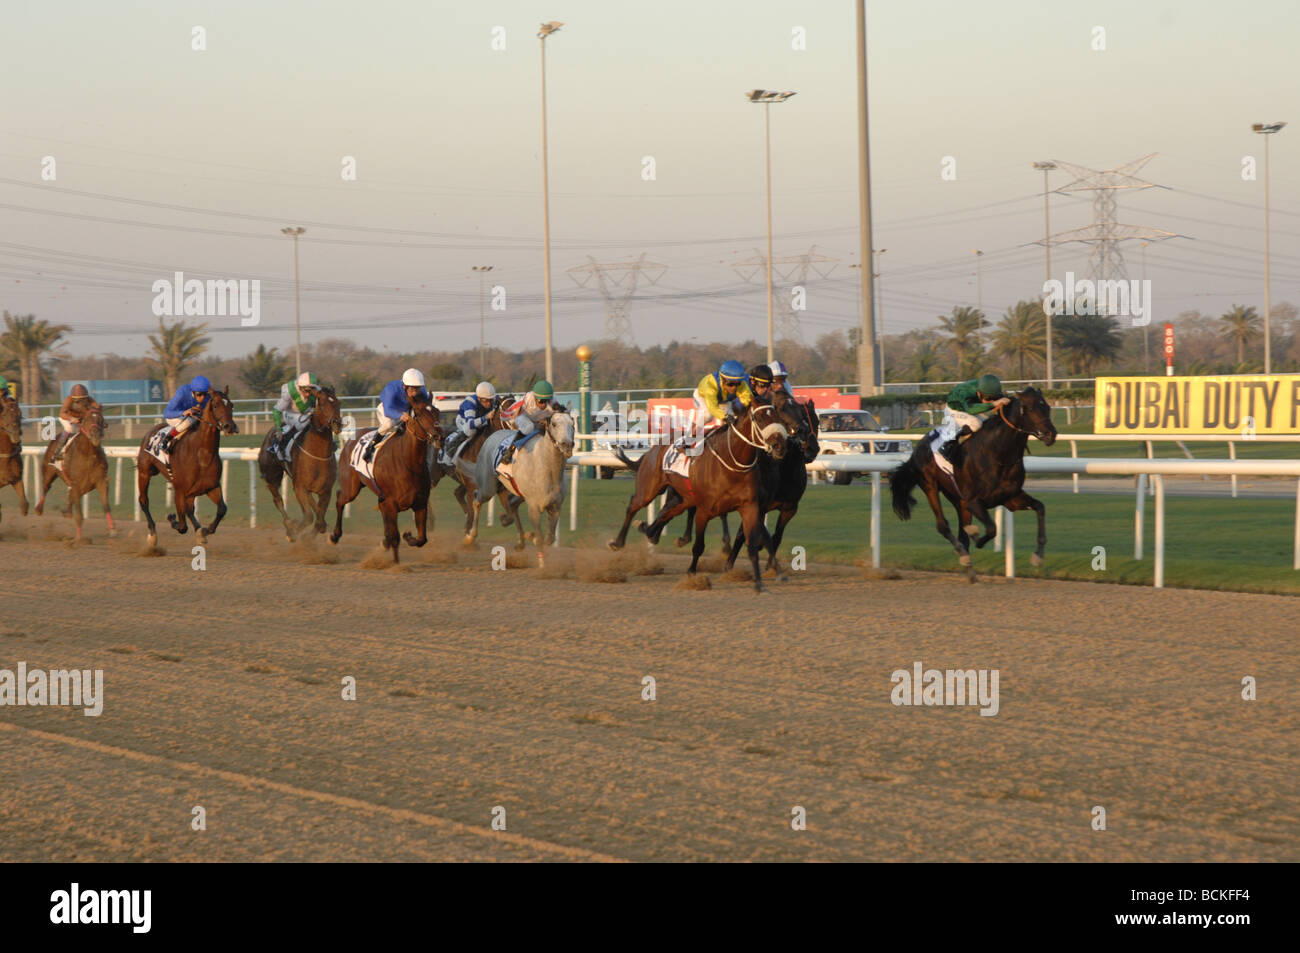 Horse racing at Nad al Sheba Racecourse, Dubai Stock Photo